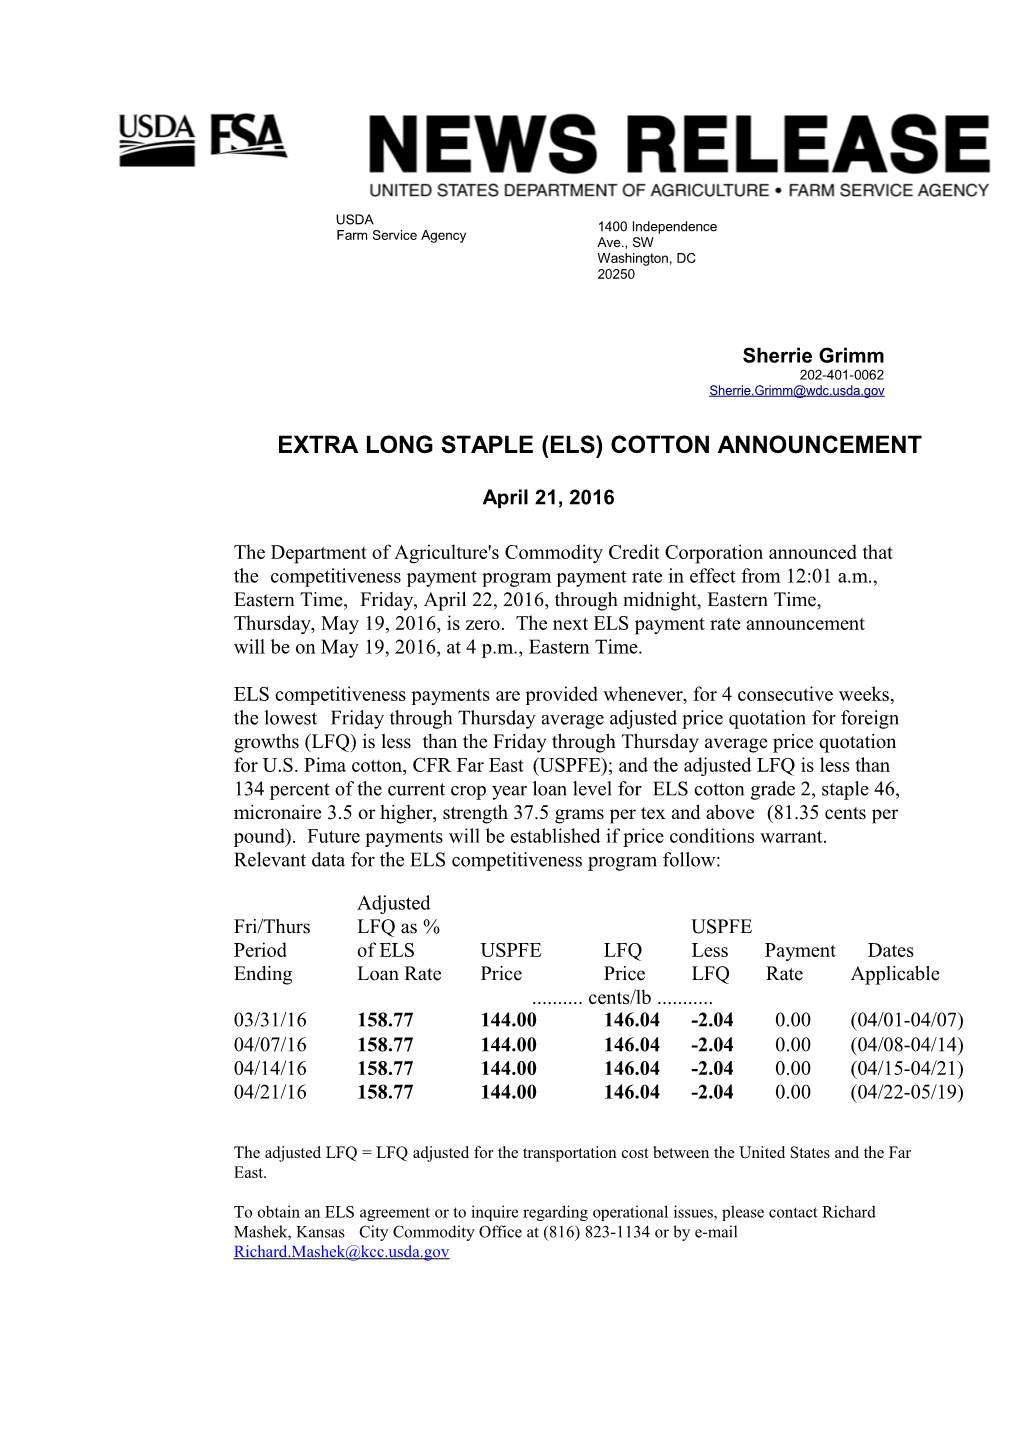 Extra Long Staple (Els) Cotton Announcement